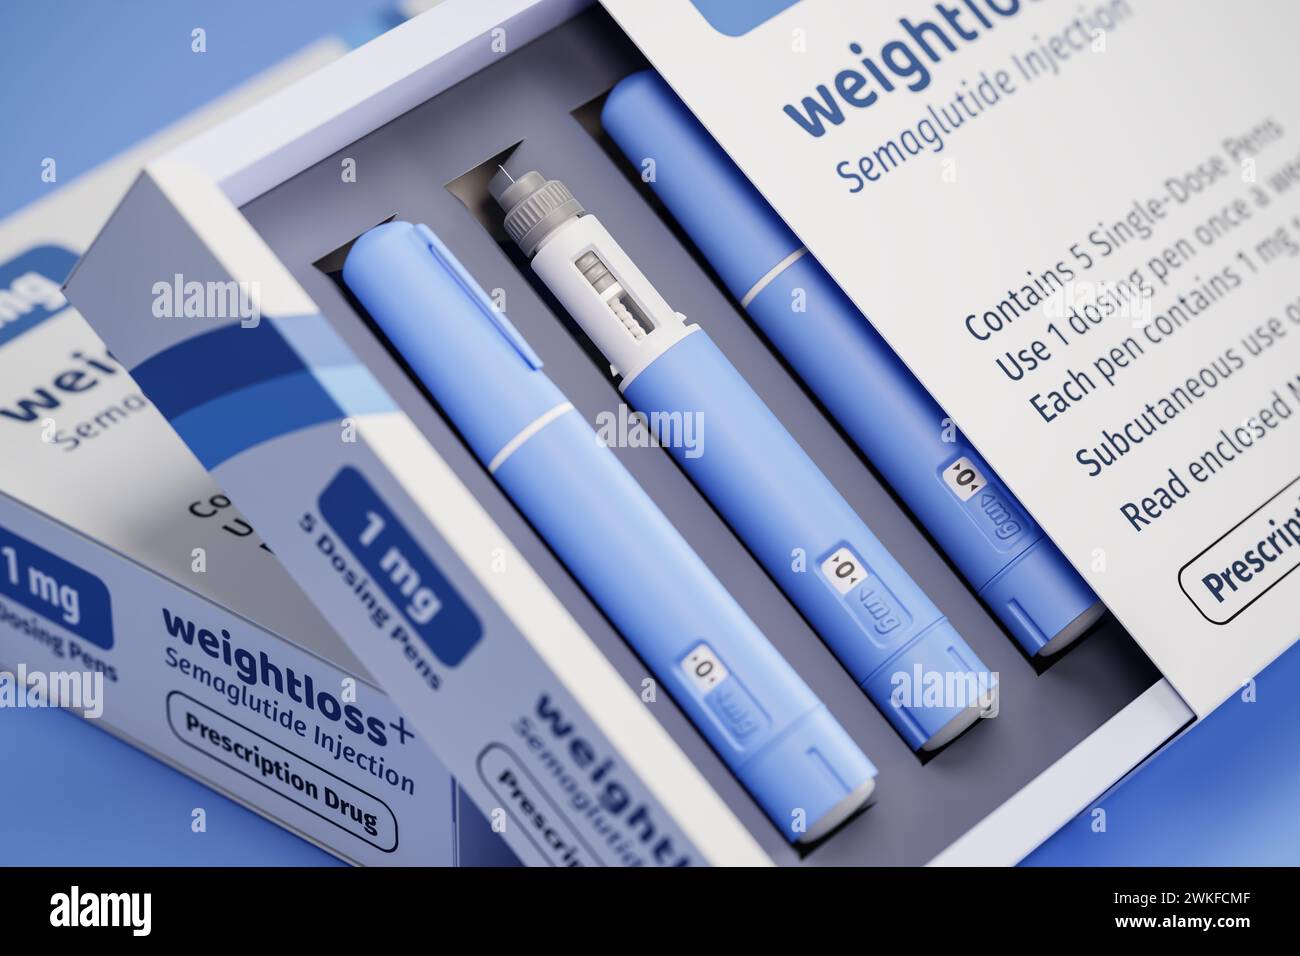 Due pacchetti da 5 penne di dosaggio ciascuno di un fittizio farmaco Semiglutin utilizzato per la perdita di peso (farmaco antidiabetico o antiobesità) su un blu Foto Stock